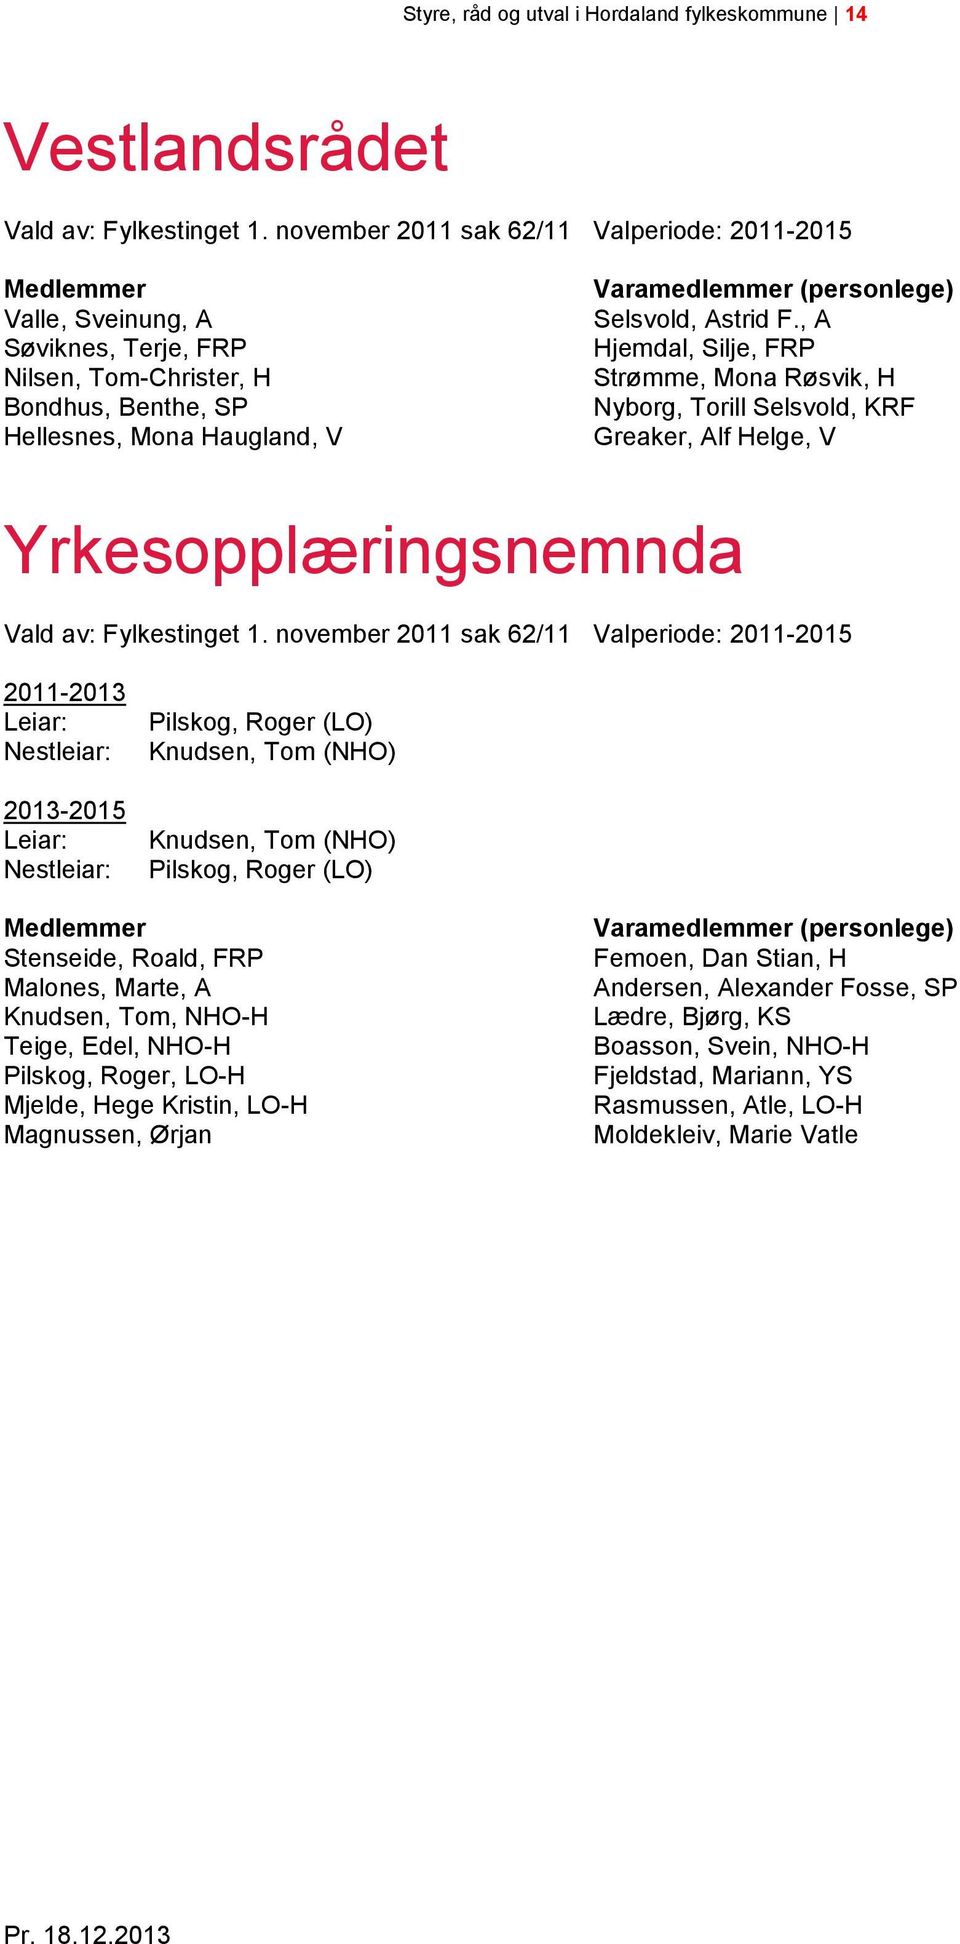 Astrid F., A Hjemdal, Silje, FRP Strømme, Mona Røsvik, H Nyborg, Torill Selsvold, KRF Greaker, Alf Helge, V Yrkesopplæringsnemnda Vald av: Fylkestinget 1.